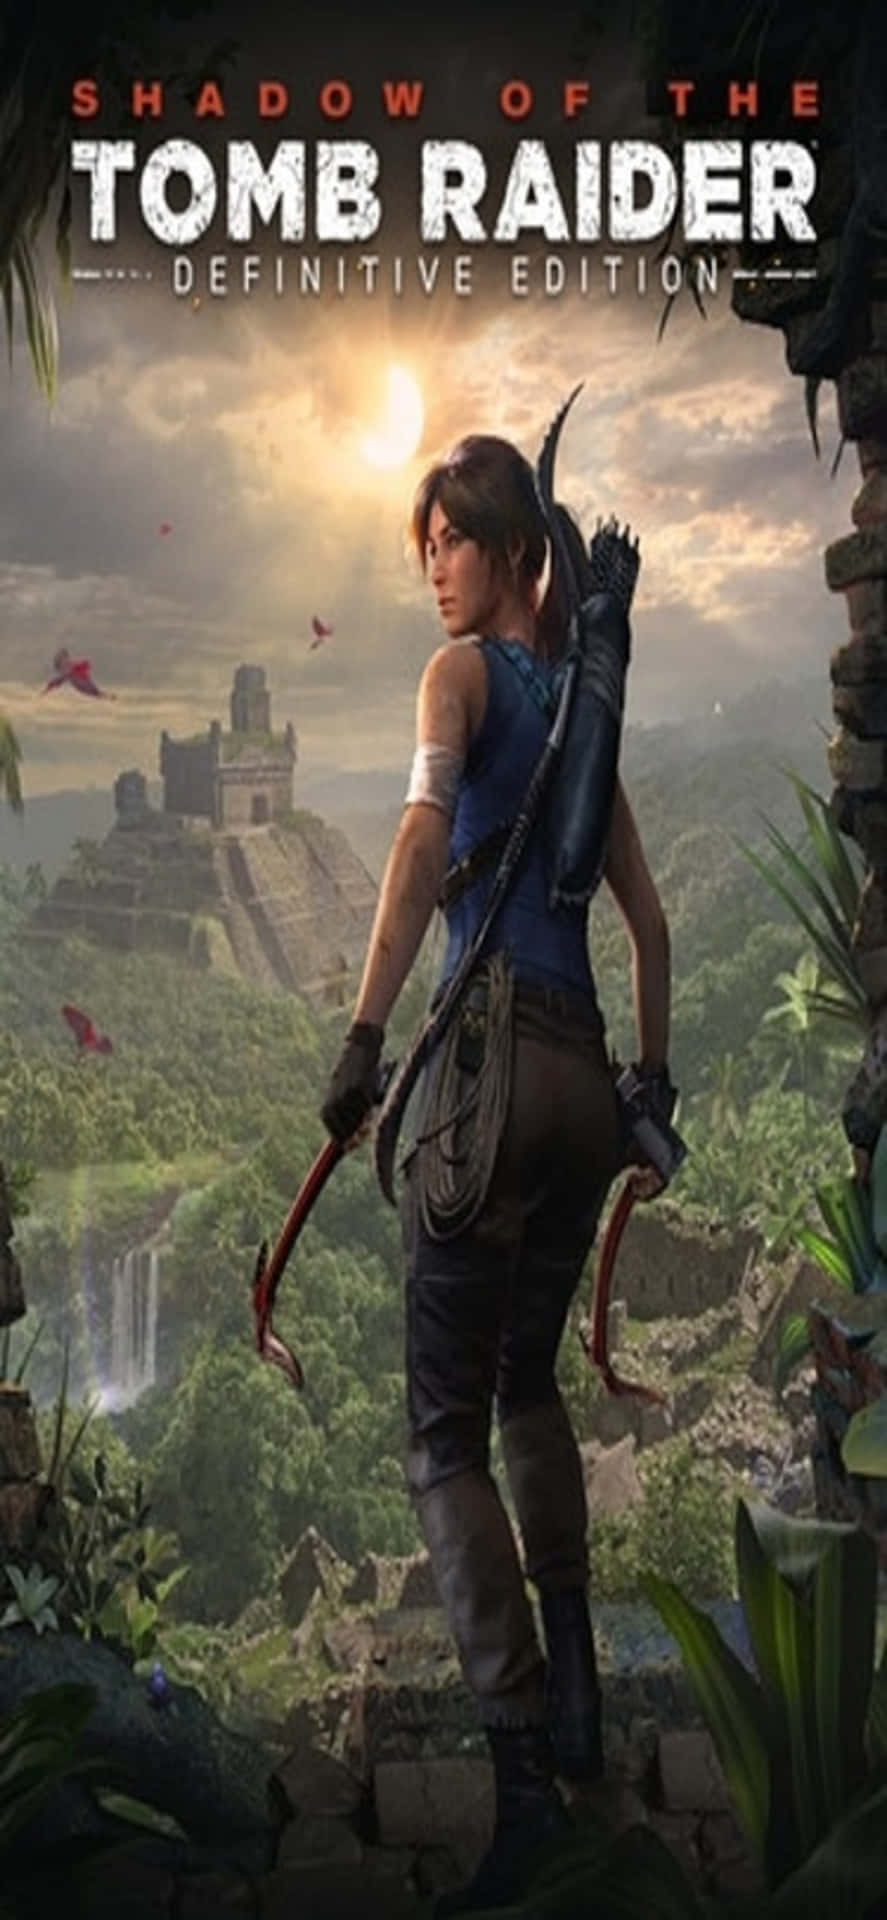 Descubrelos Misterios Del Mundo Con Shadow Of The Tomb Raider Para Iphone X